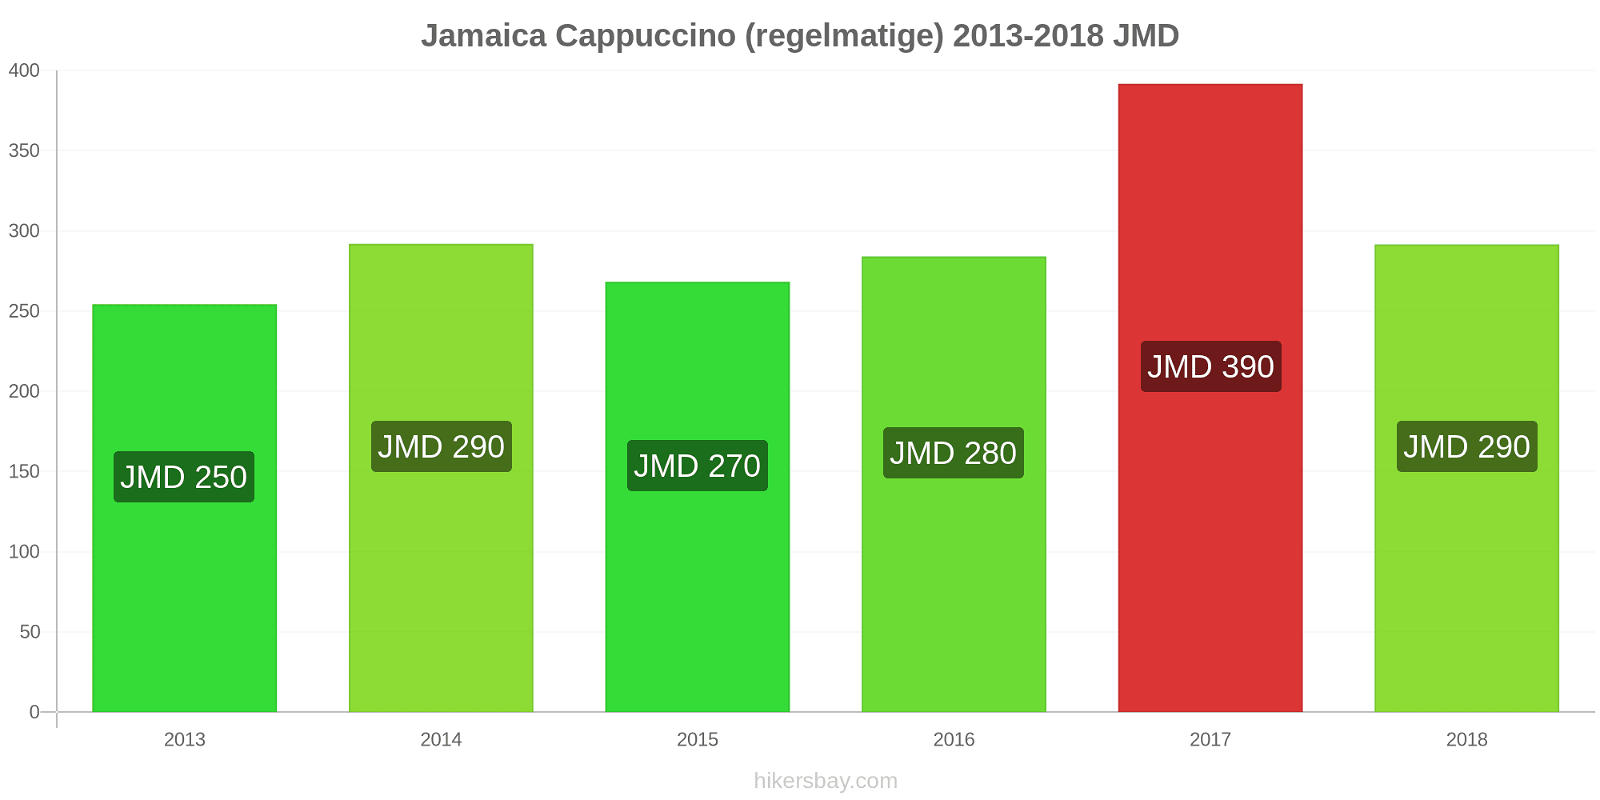 Jamaica prijswijzigingen Cappuccino hikersbay.com